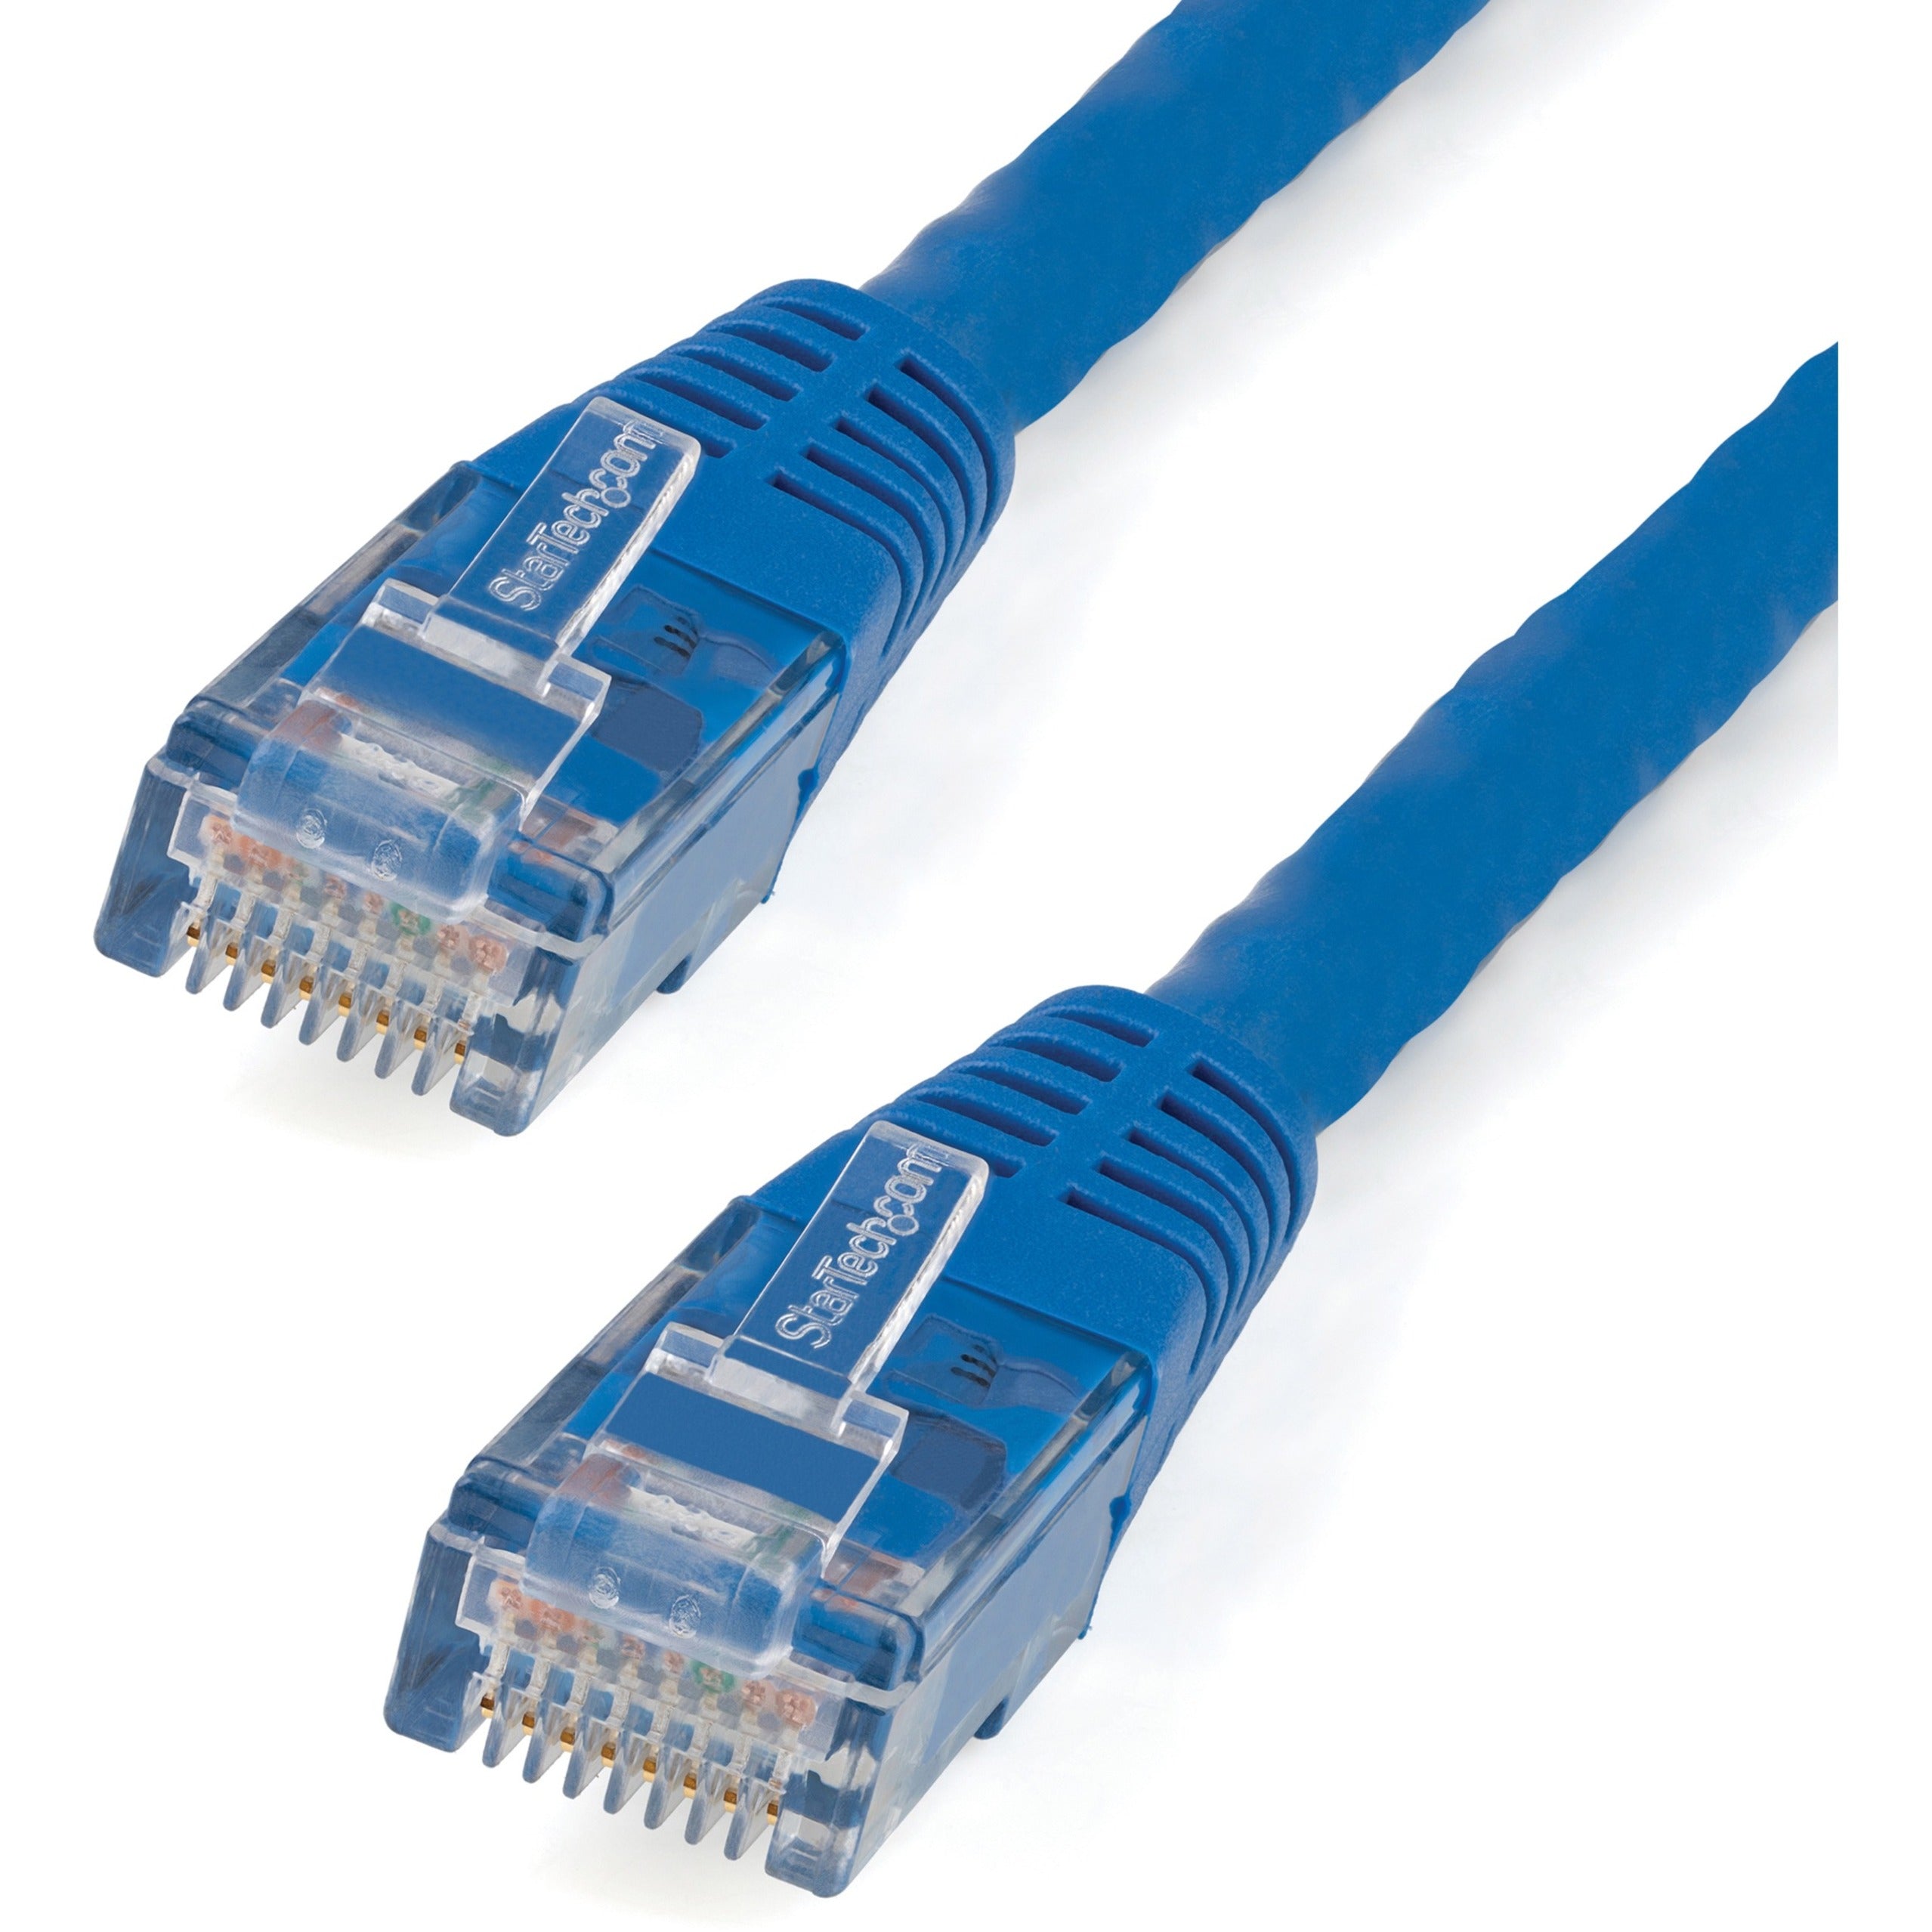 星光科技 StarTech.com C6PATCH4BL 4英尺 蓝色 成型 Cat6 UTP 数据线 ETL 验证，10 Gbit/s 数据传输速率，镀金连接器